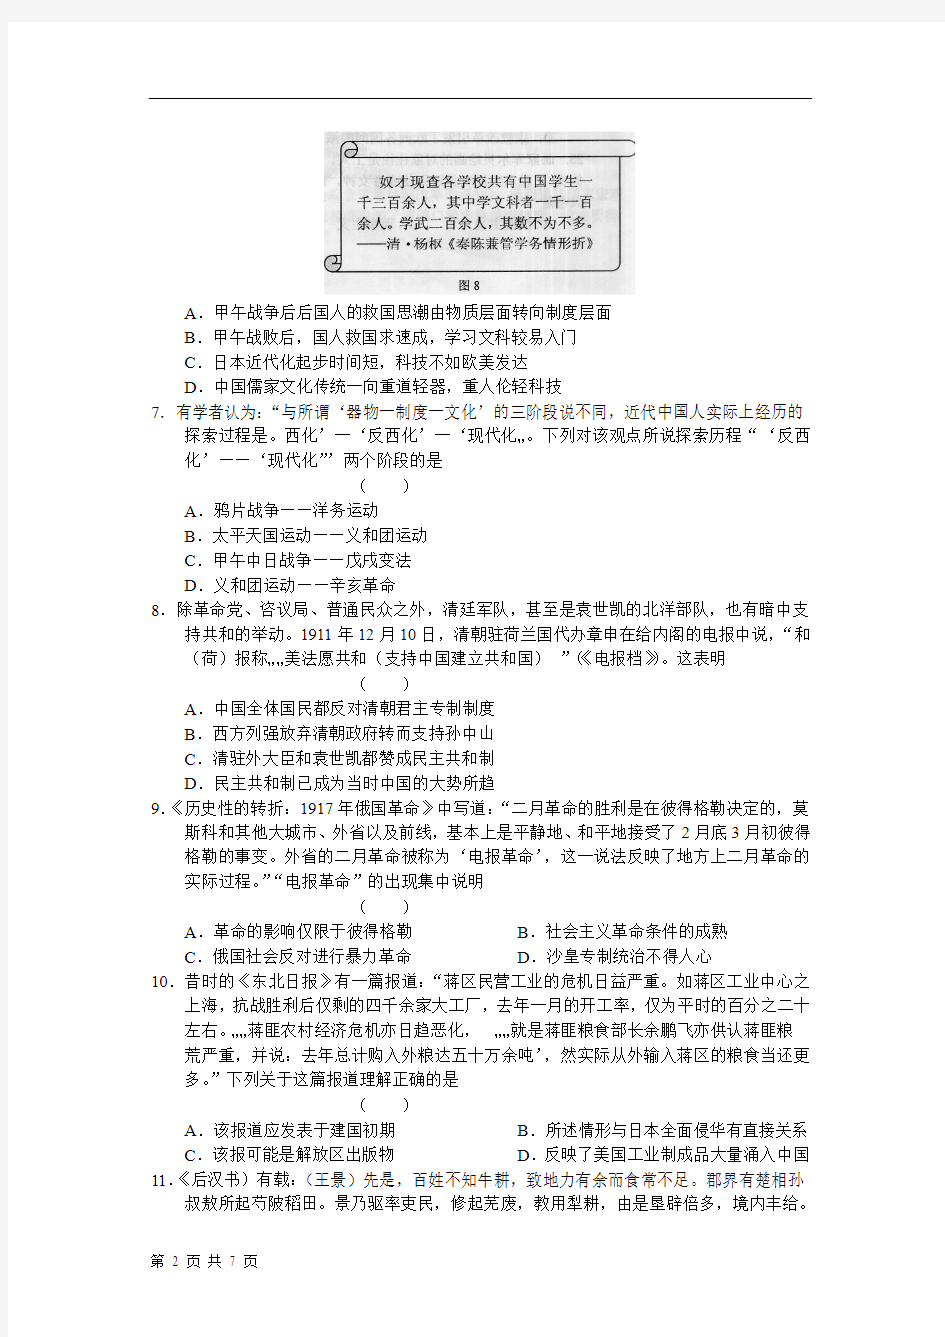 金太阳新课标资源网 - 漳州市教育局---首页